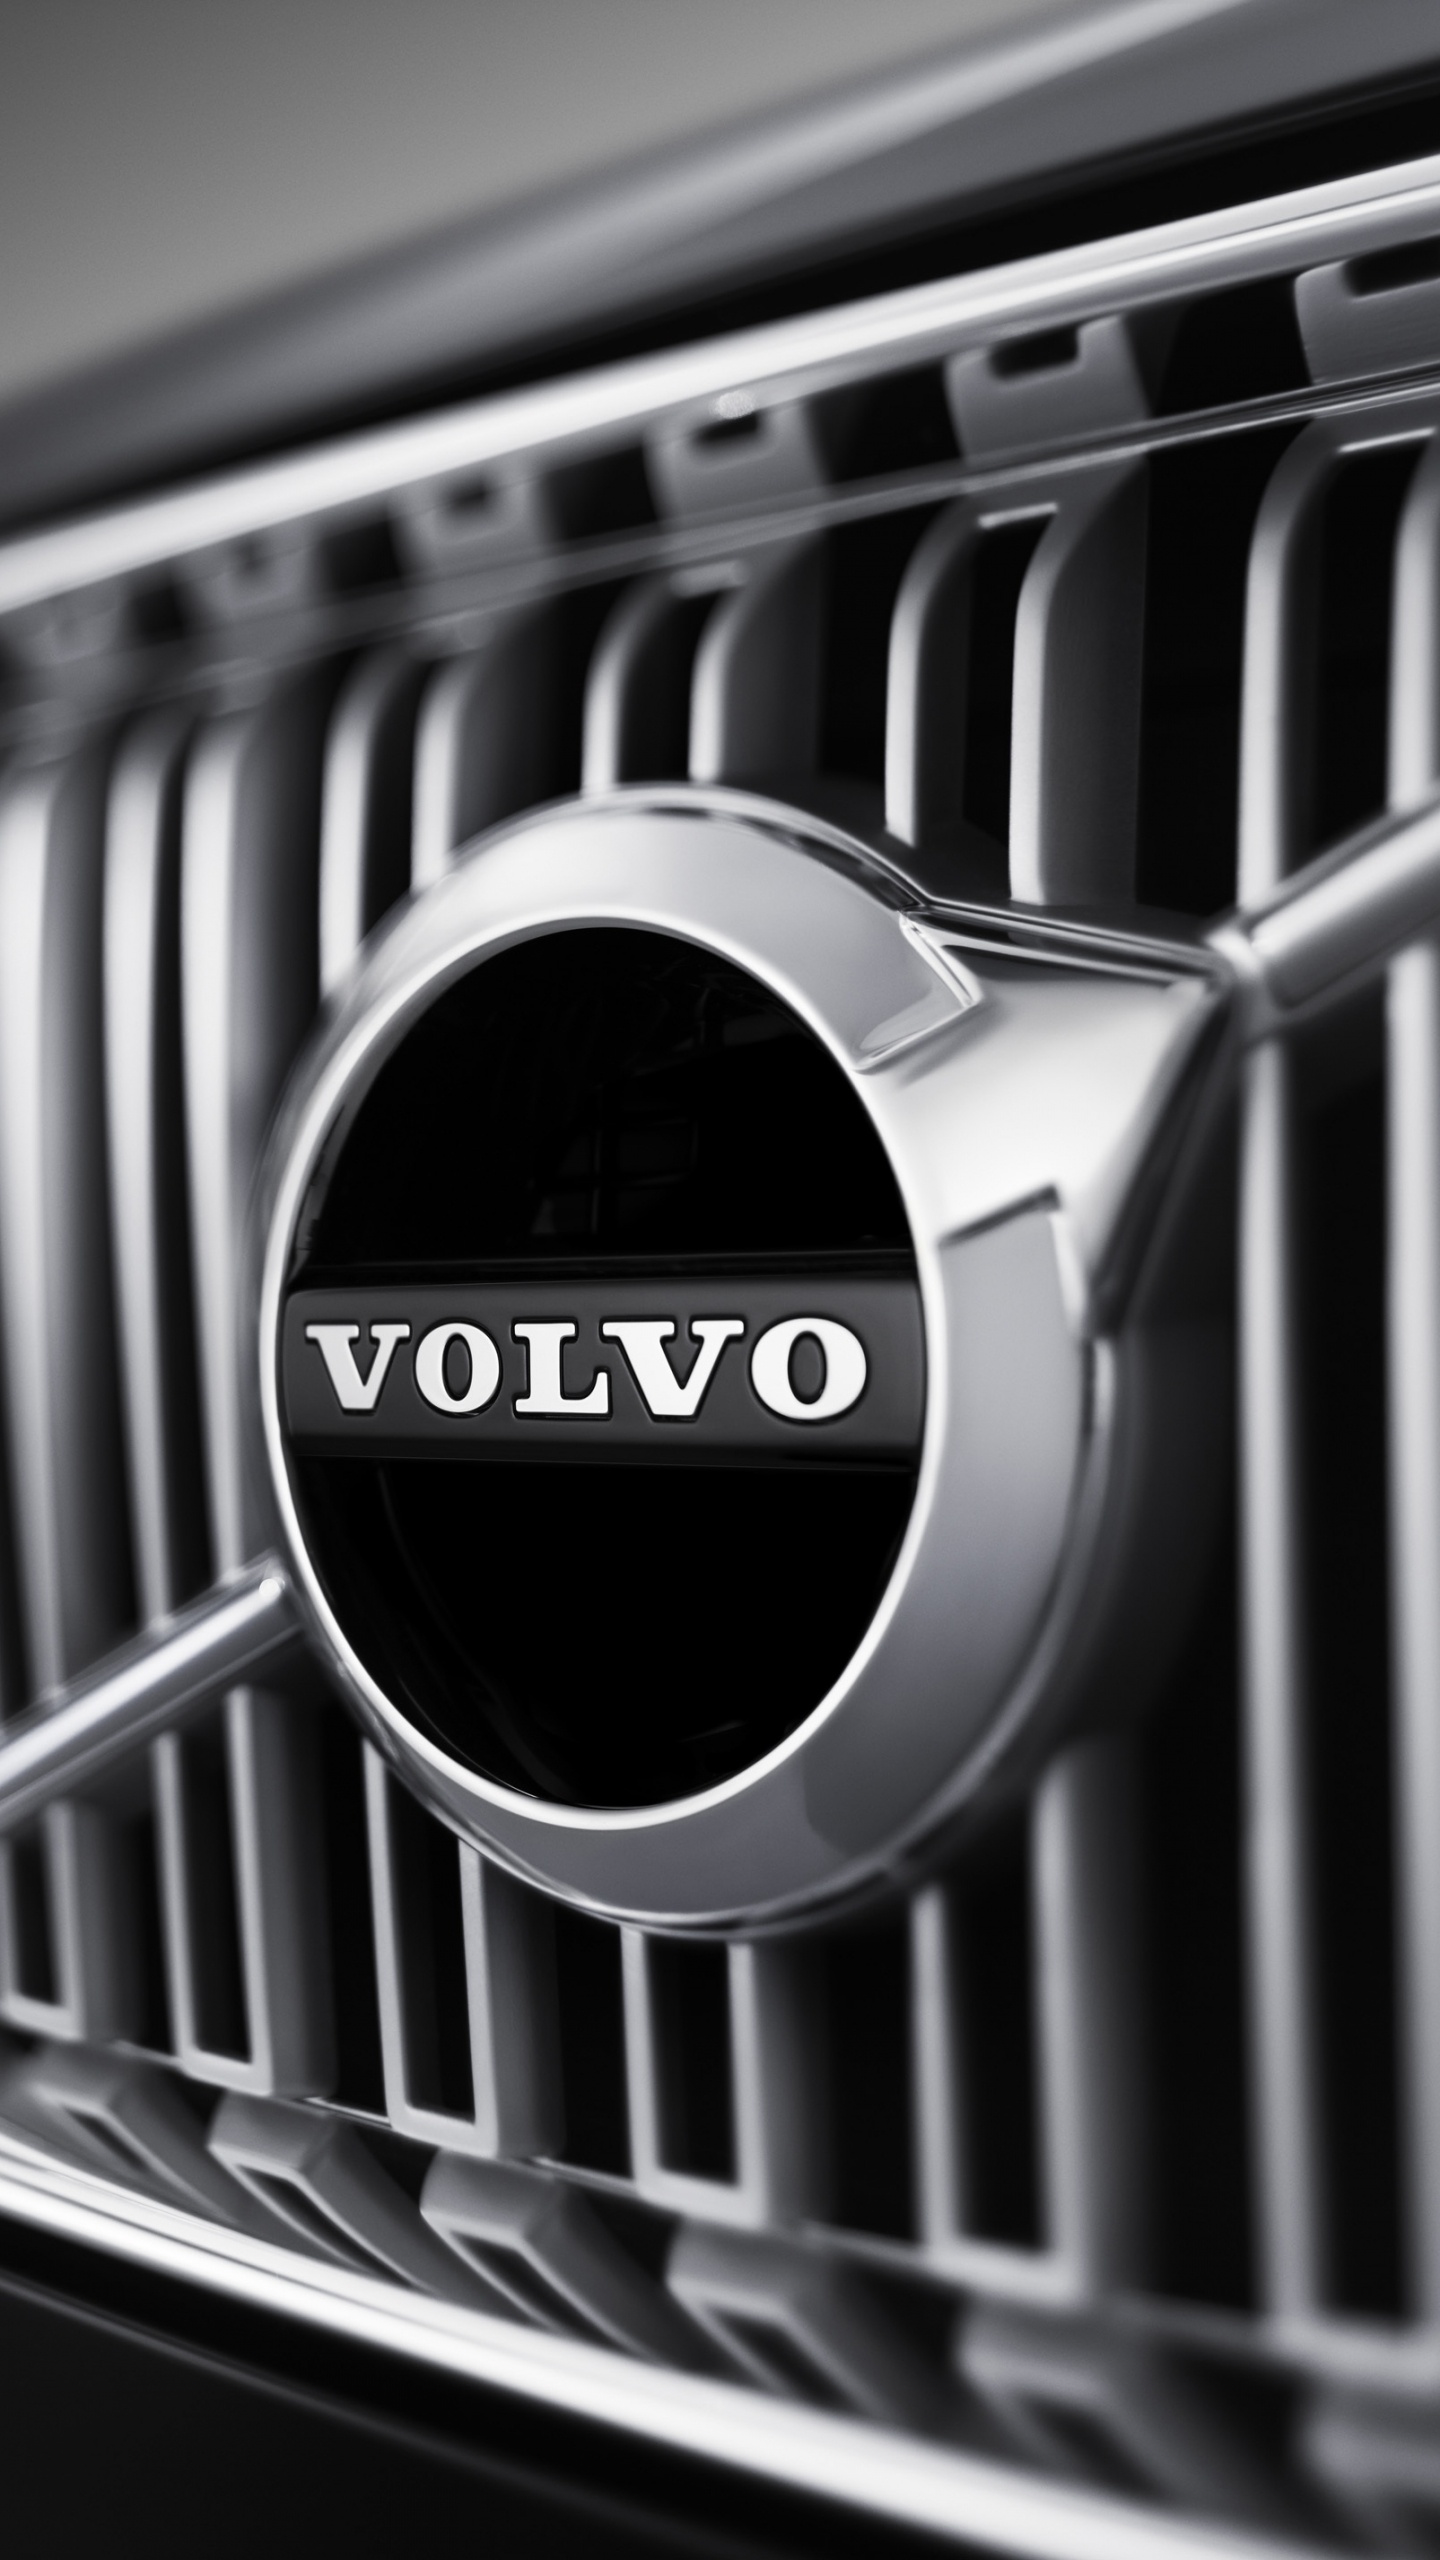 ab Volvo, Voitures Volvo, Voiture, Grille, Noir et Blanc. Wallpaper in 1440x2560 Resolution